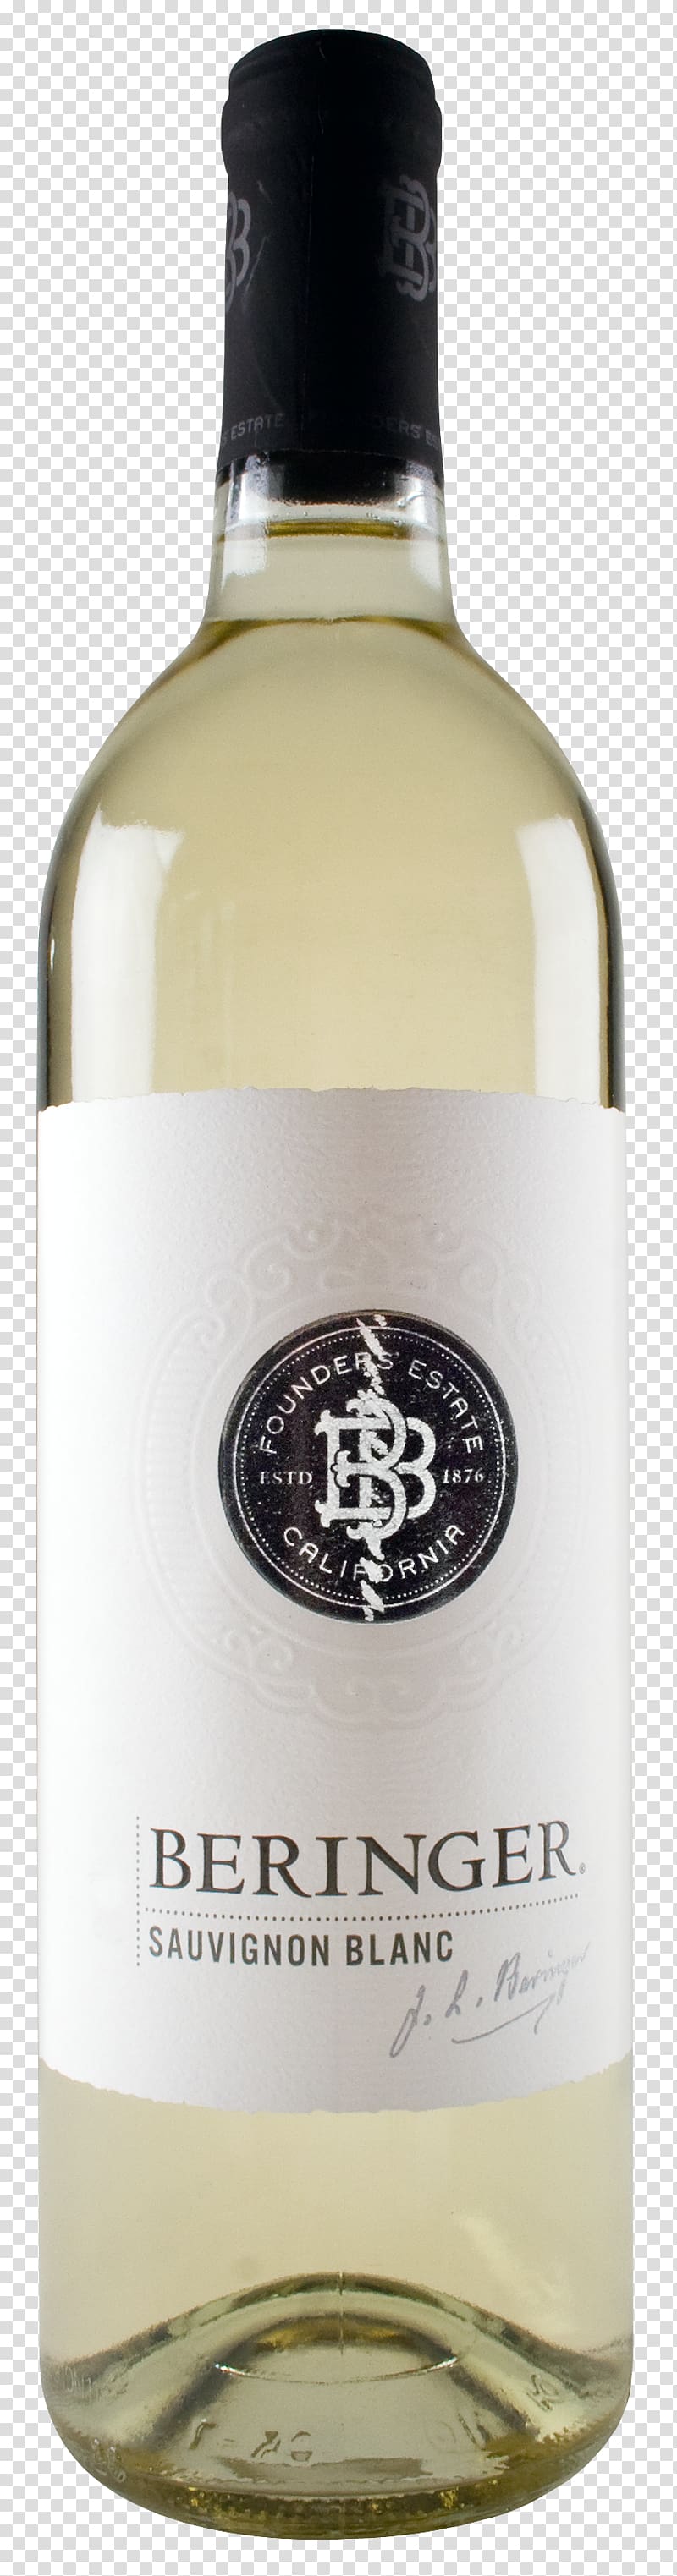 White wine Liqueur Sauvignon blanc Arthur\'s Cellar International, wine transparent background PNG clipart